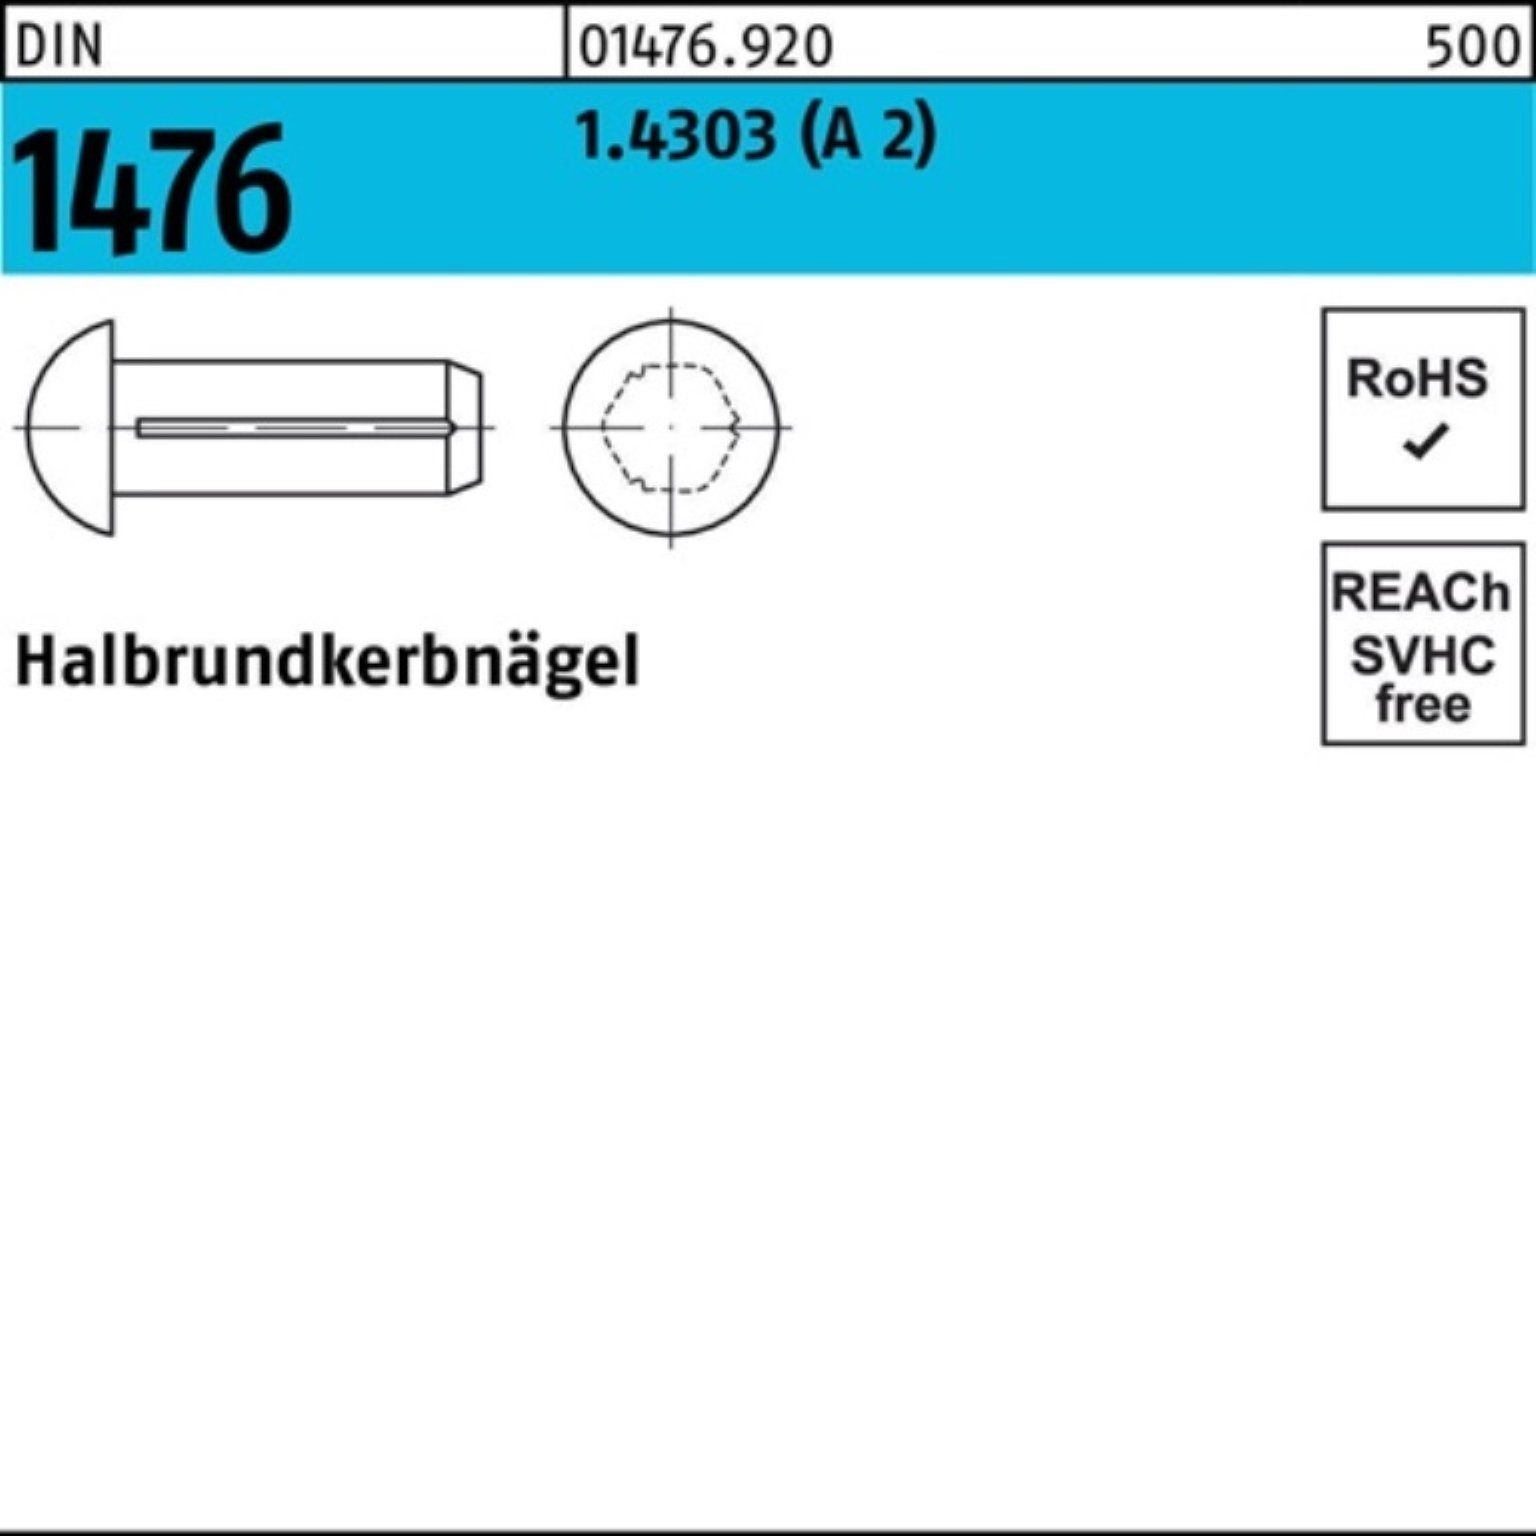 Stück Nagel 10 Halbrundkerbnagel 1.4303 Pack 100er Reyher (A DIN DI 100 2) 3x 1476